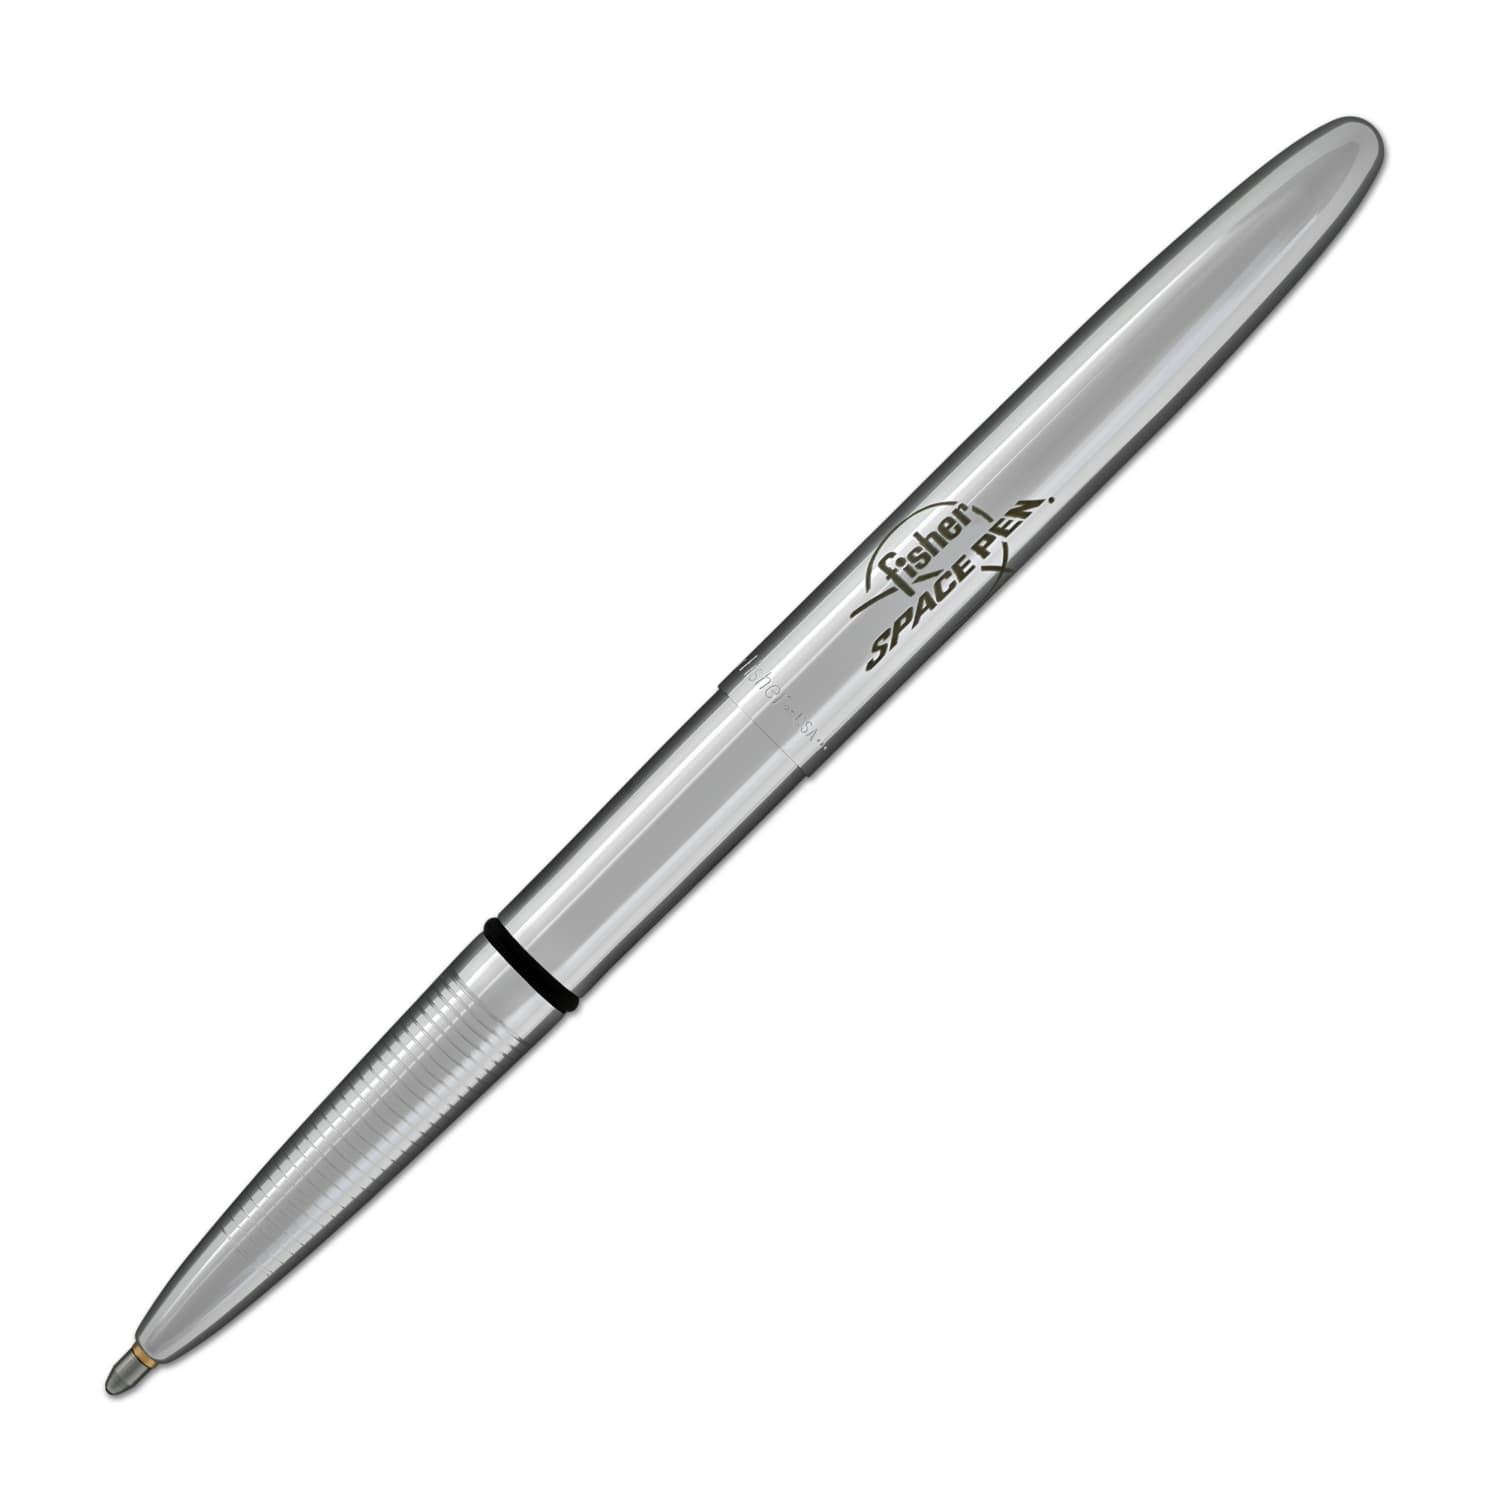 Fisher Bullet Space - 400-FSP Chrome Bullet Space Pen w/ Fisher Logo  Engraved Ballpoint Pen - NEW In Gift Box - Goldspot Pens